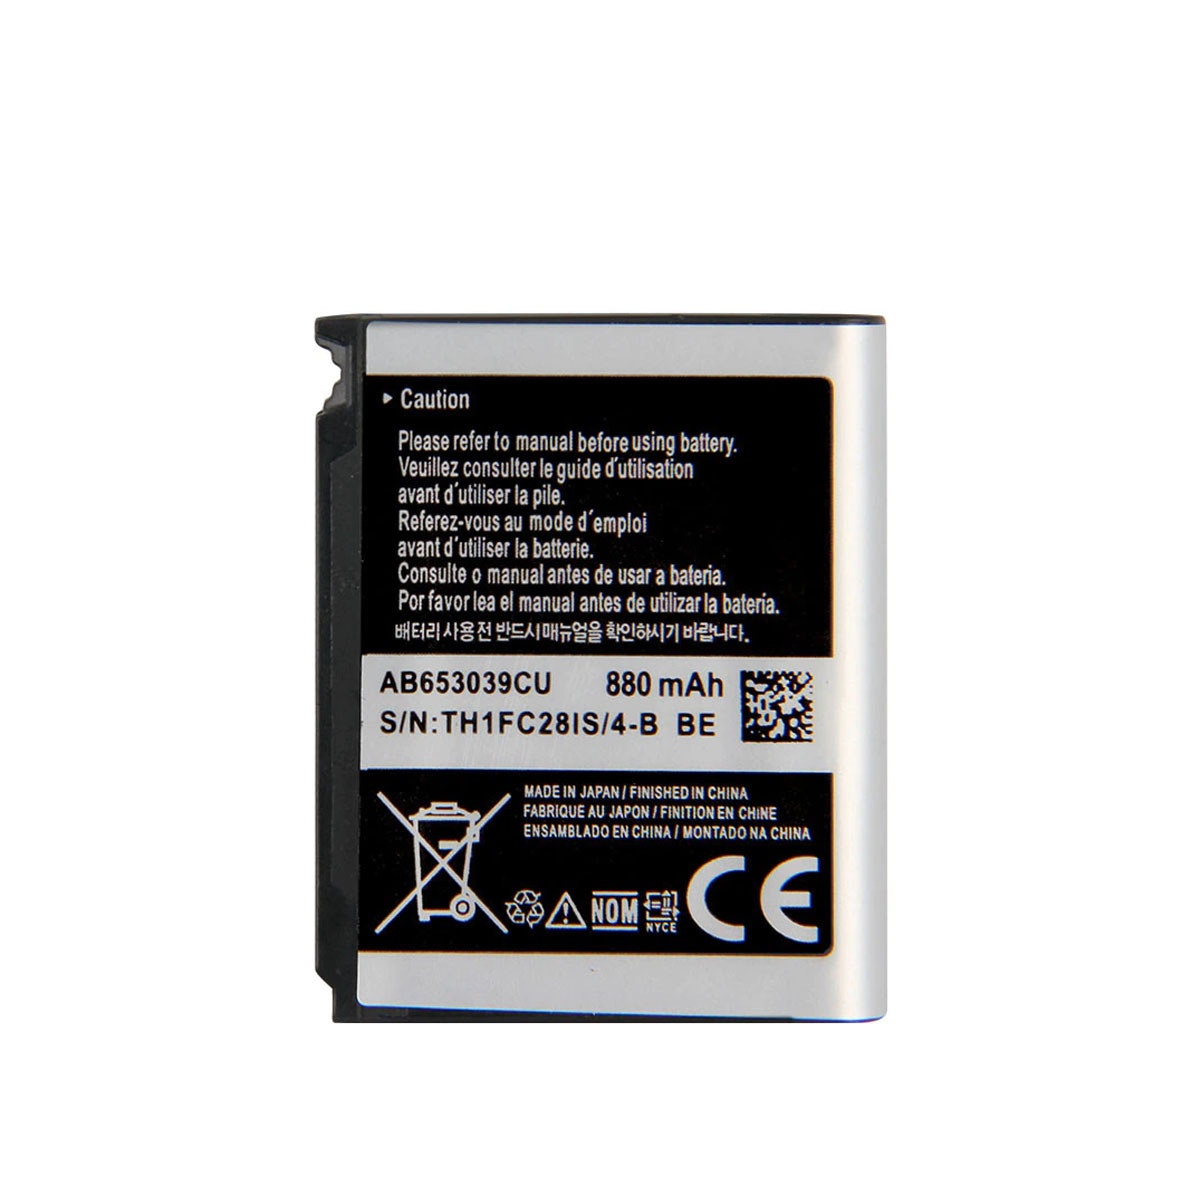 АКБ (Аккумулятор) AB653039CU для SAMSUNG GT-S3310, SGH-U800G, SGH-L170, SGH-U800, SGH-U900, 880mAh